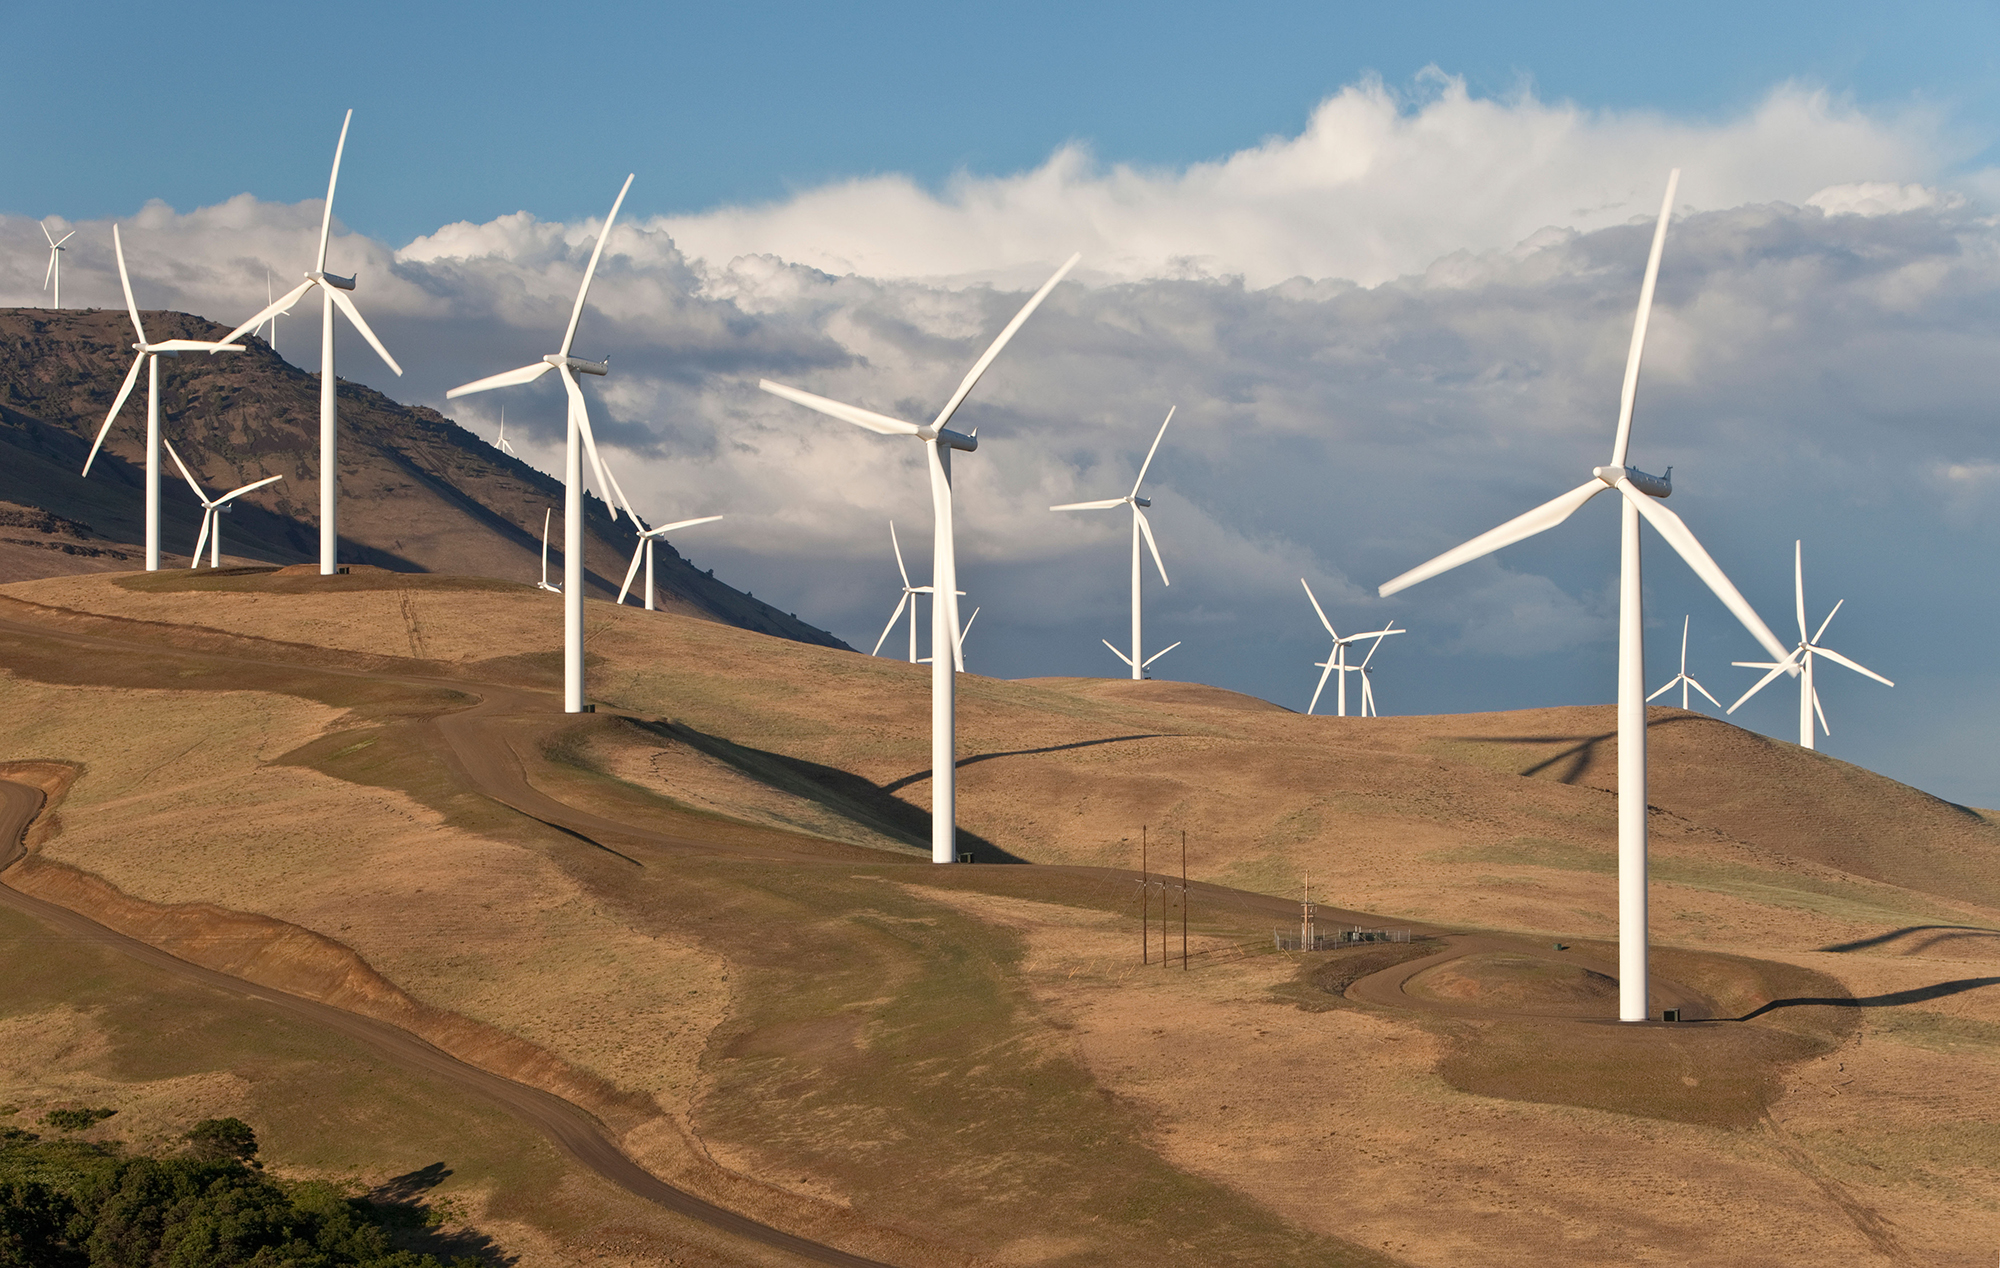 4705 Wind Energy Sketch Images Stock Photos  Vectors  Shutterstock